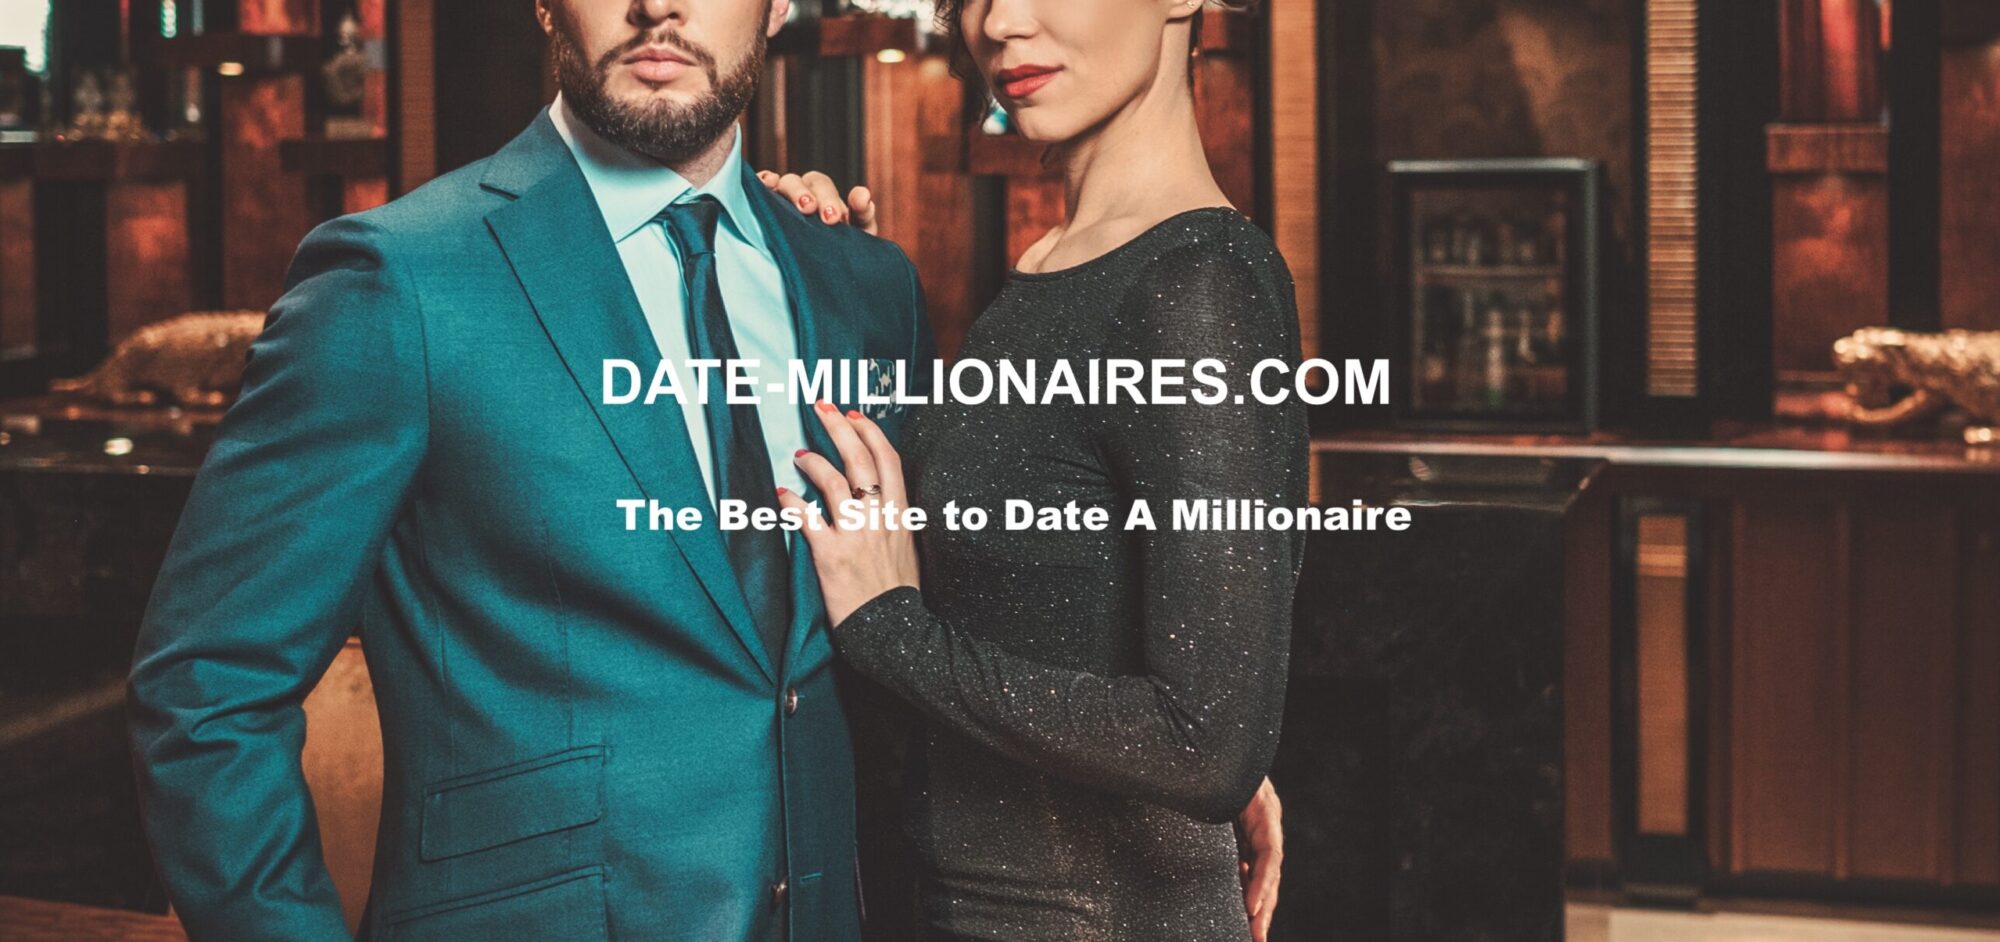 Date Millionaires – Wealthy Men Looking for Women